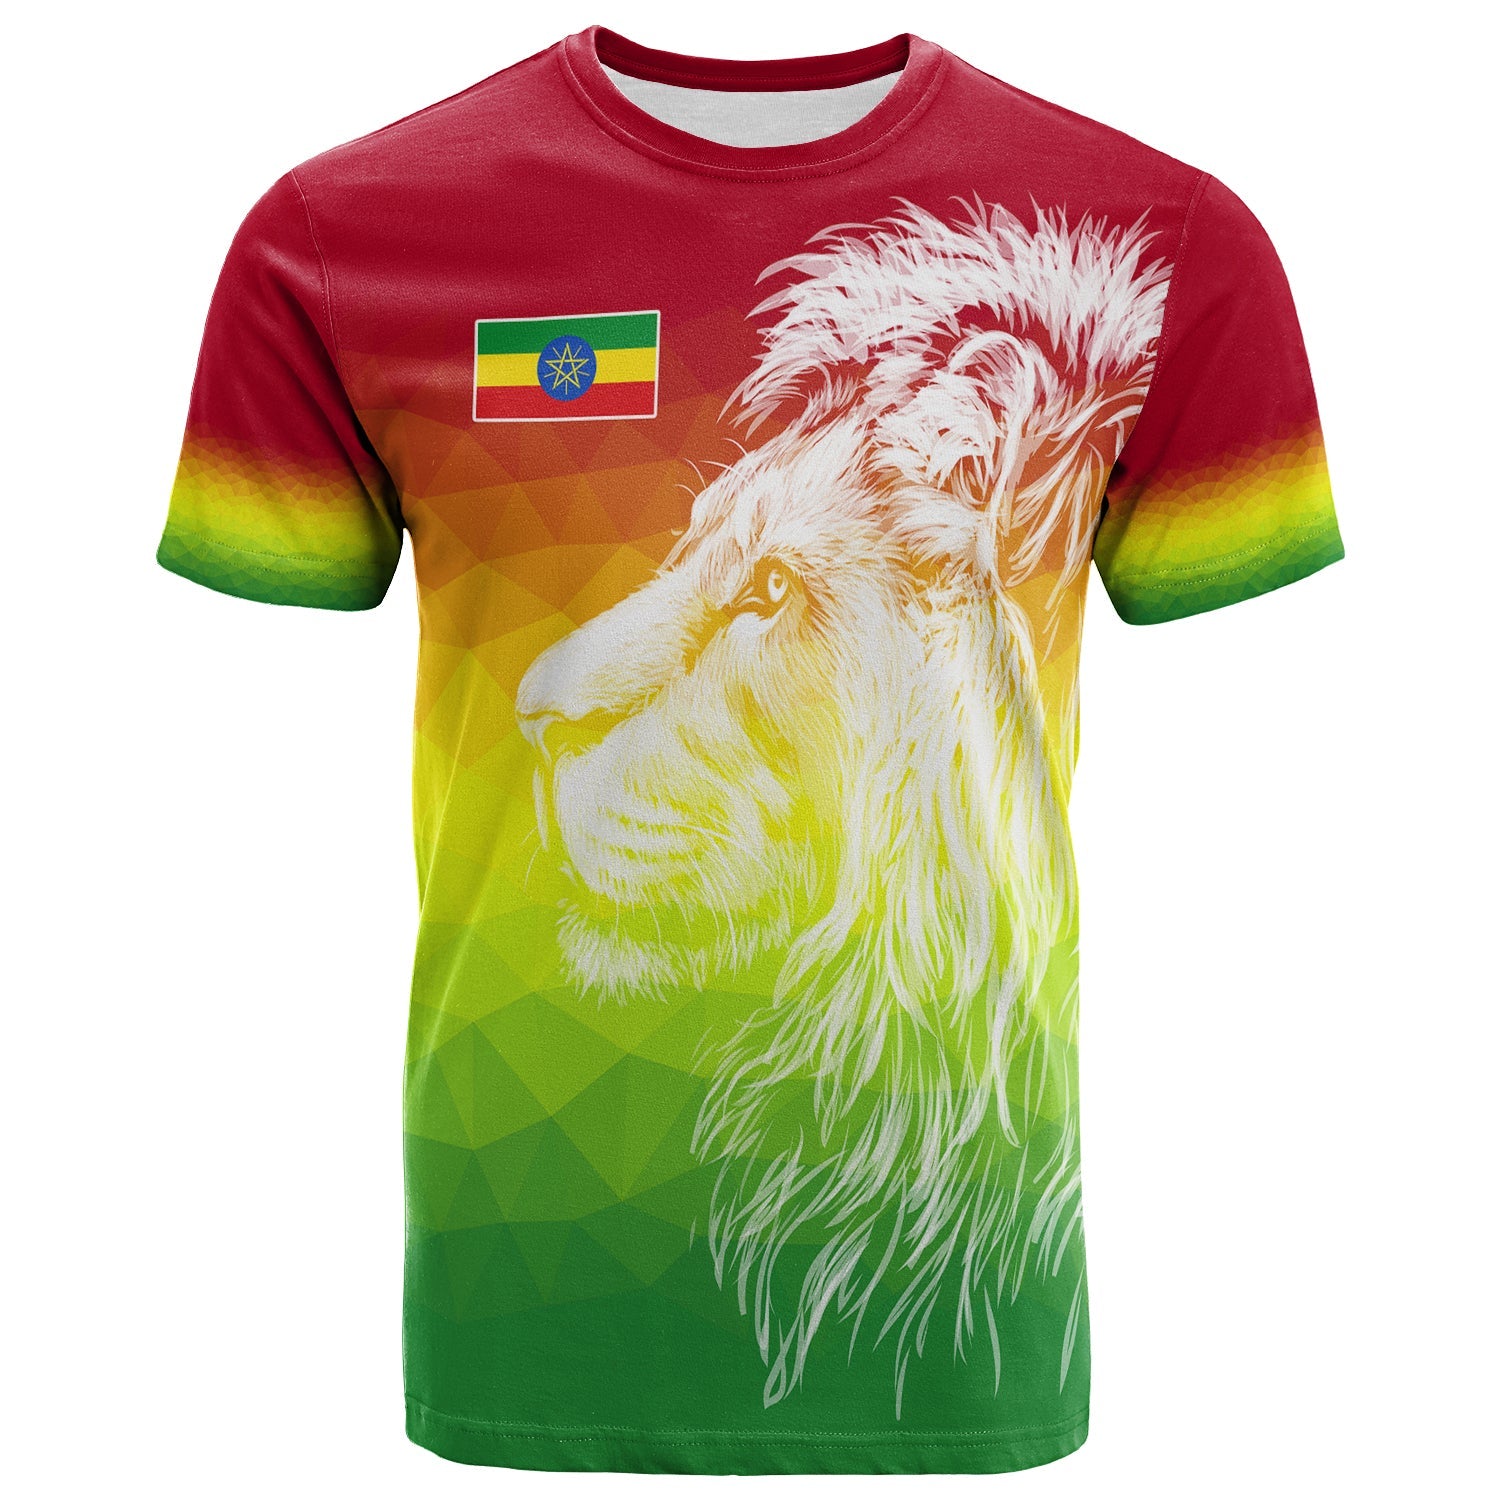 ethiopia-t-shirt-lion-ethiopian-style-flag